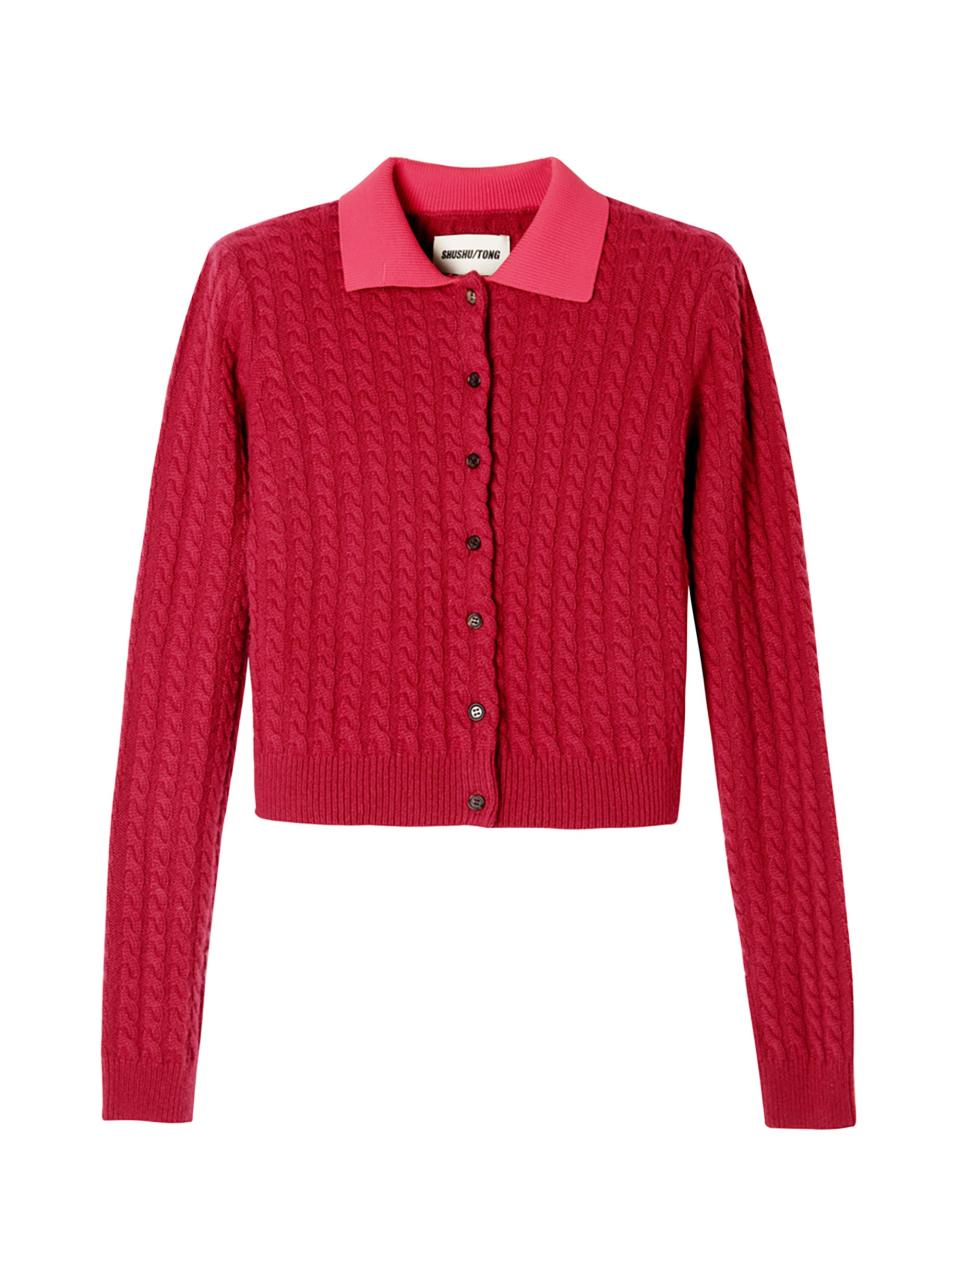 Shushu/Tong burgundy cashmere cardigan (£517)